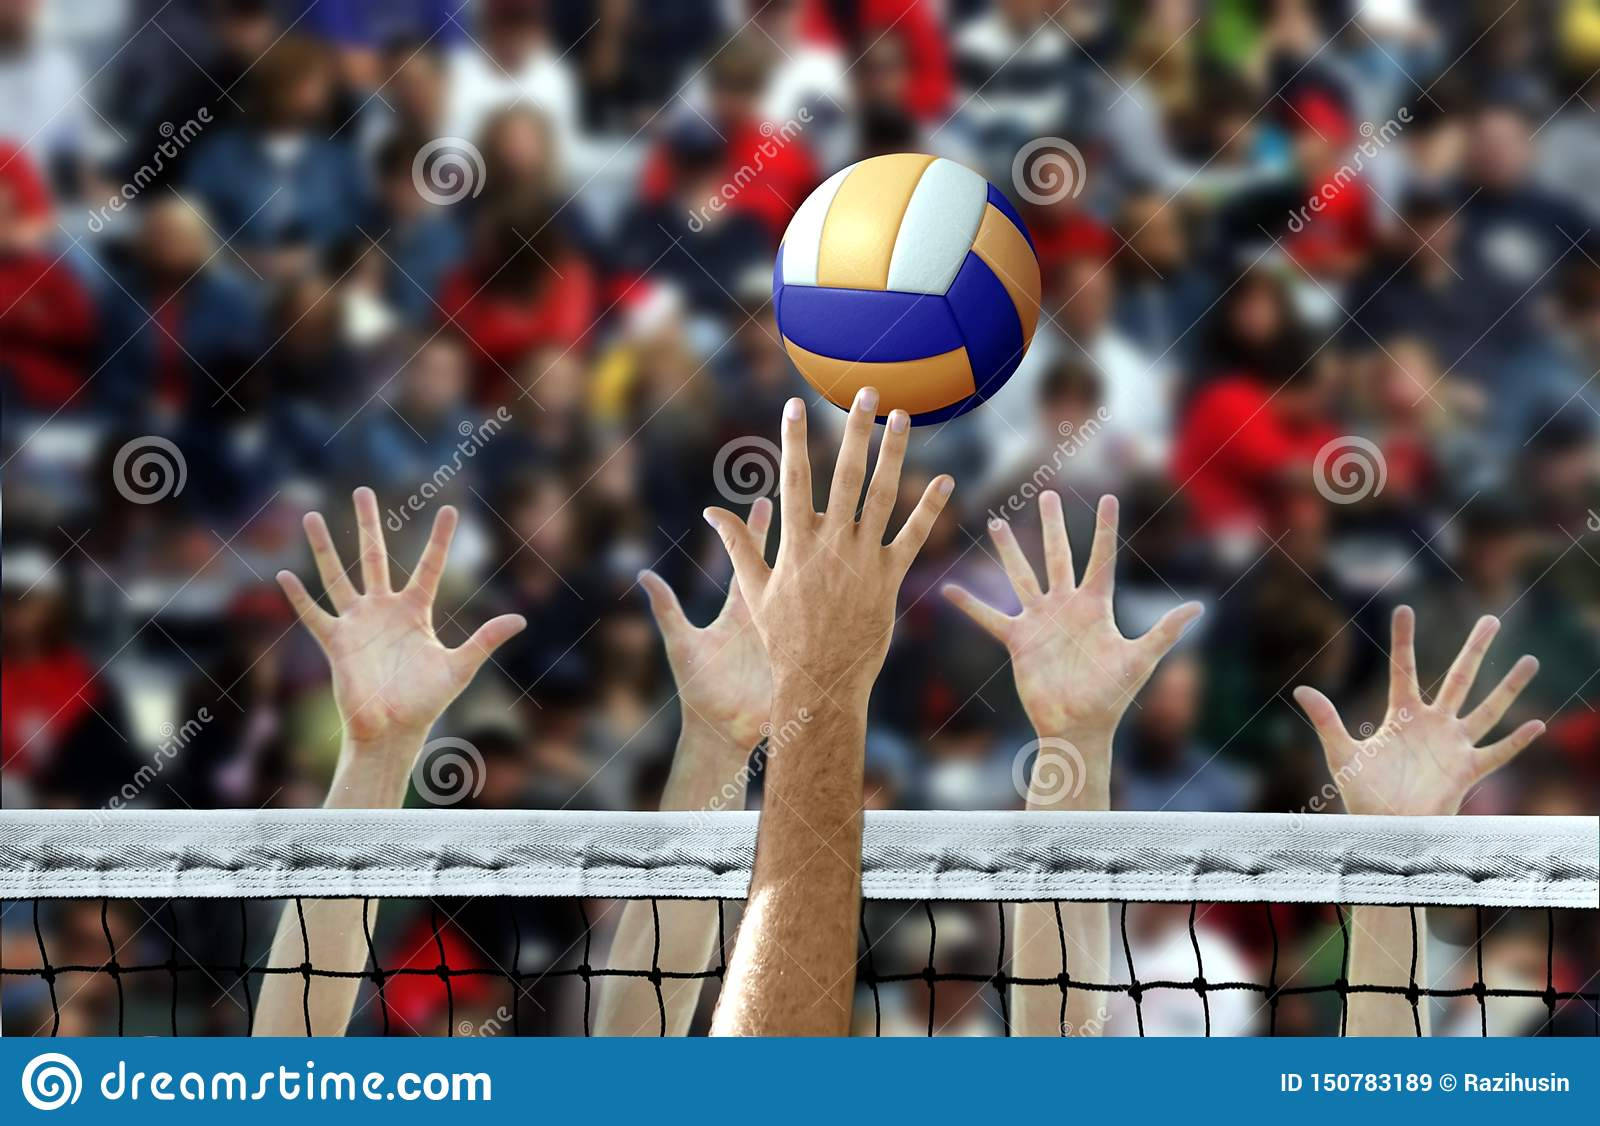 Volleyballballerreicht Die Hände Der Menschen In Der Menge. Wallpaper